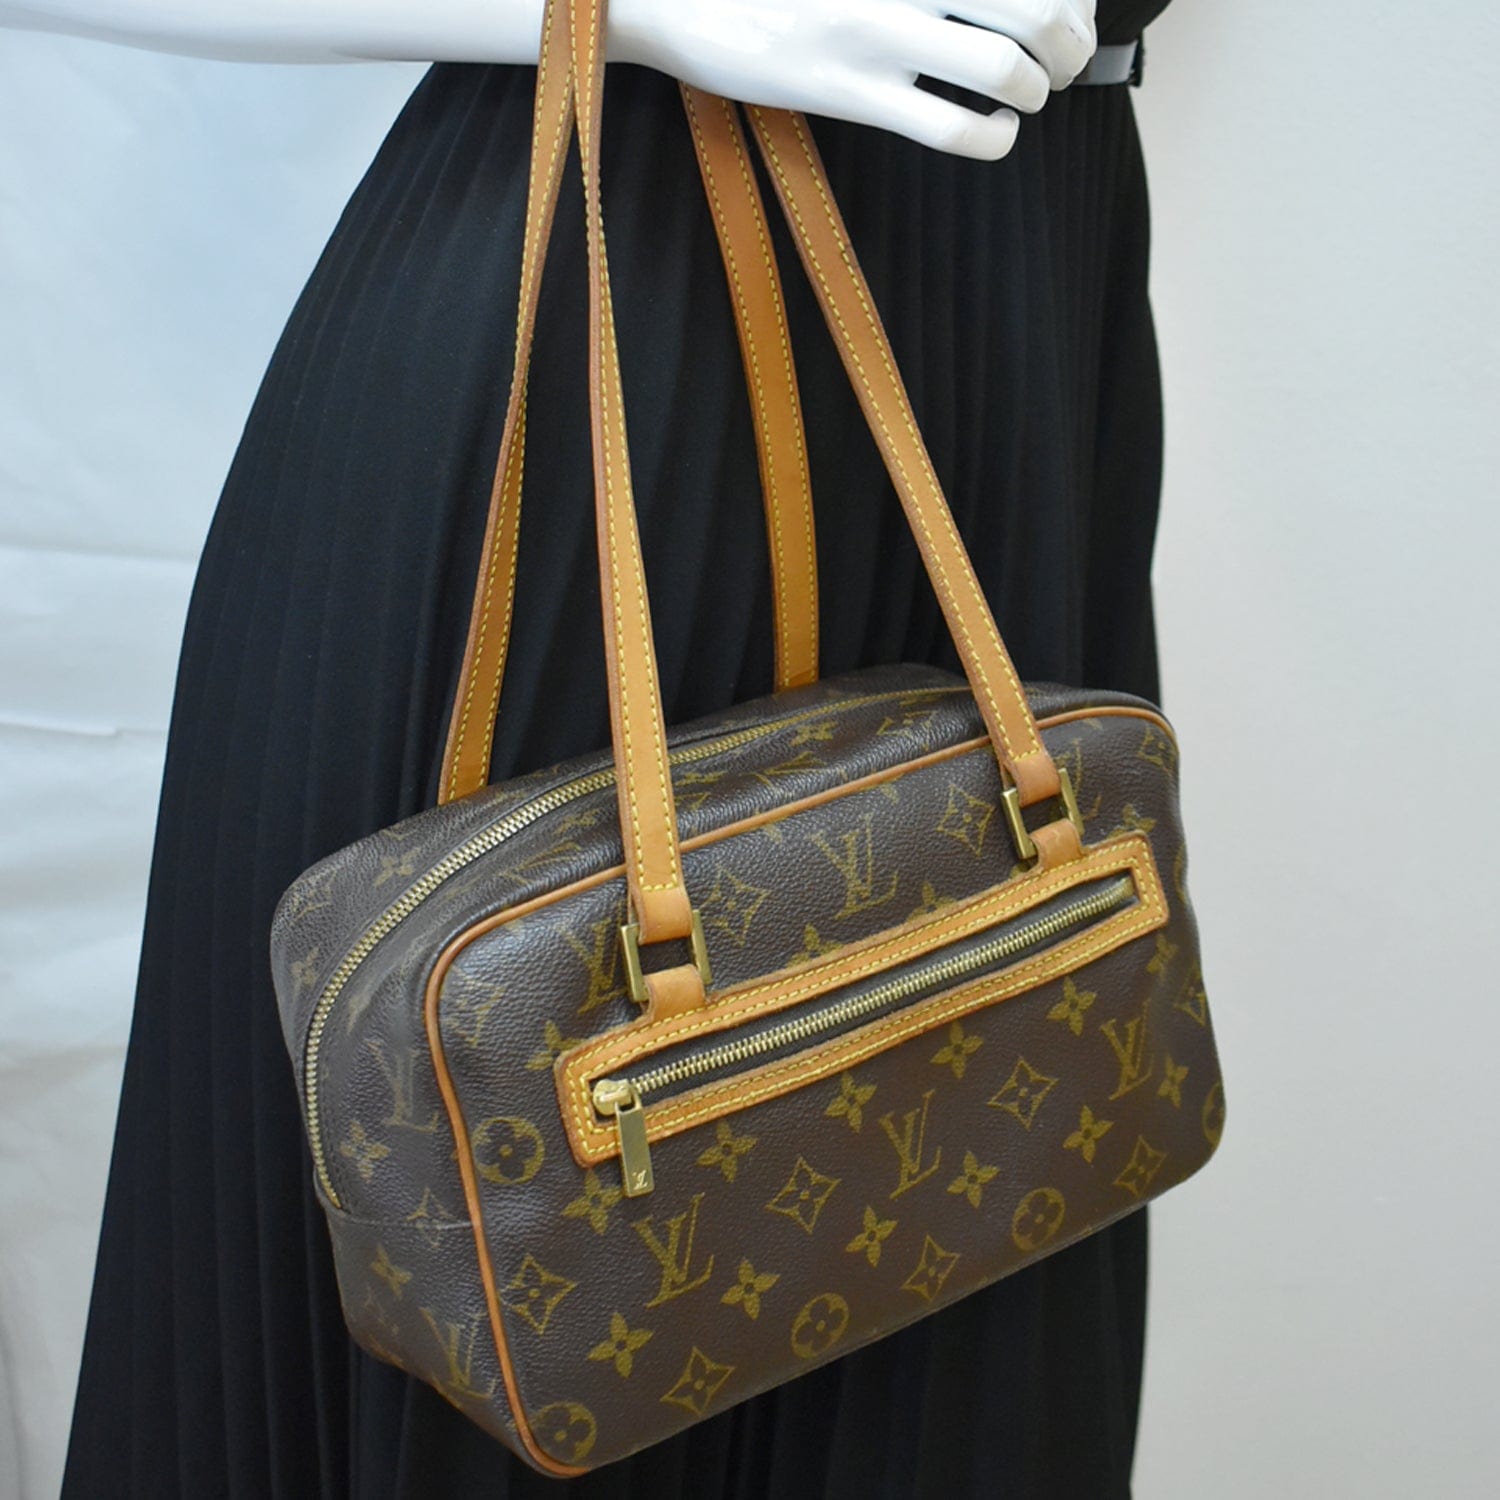 Louis Vuitton Louis Vuitton Cite MM Monogram Canvas Shoulder Bag